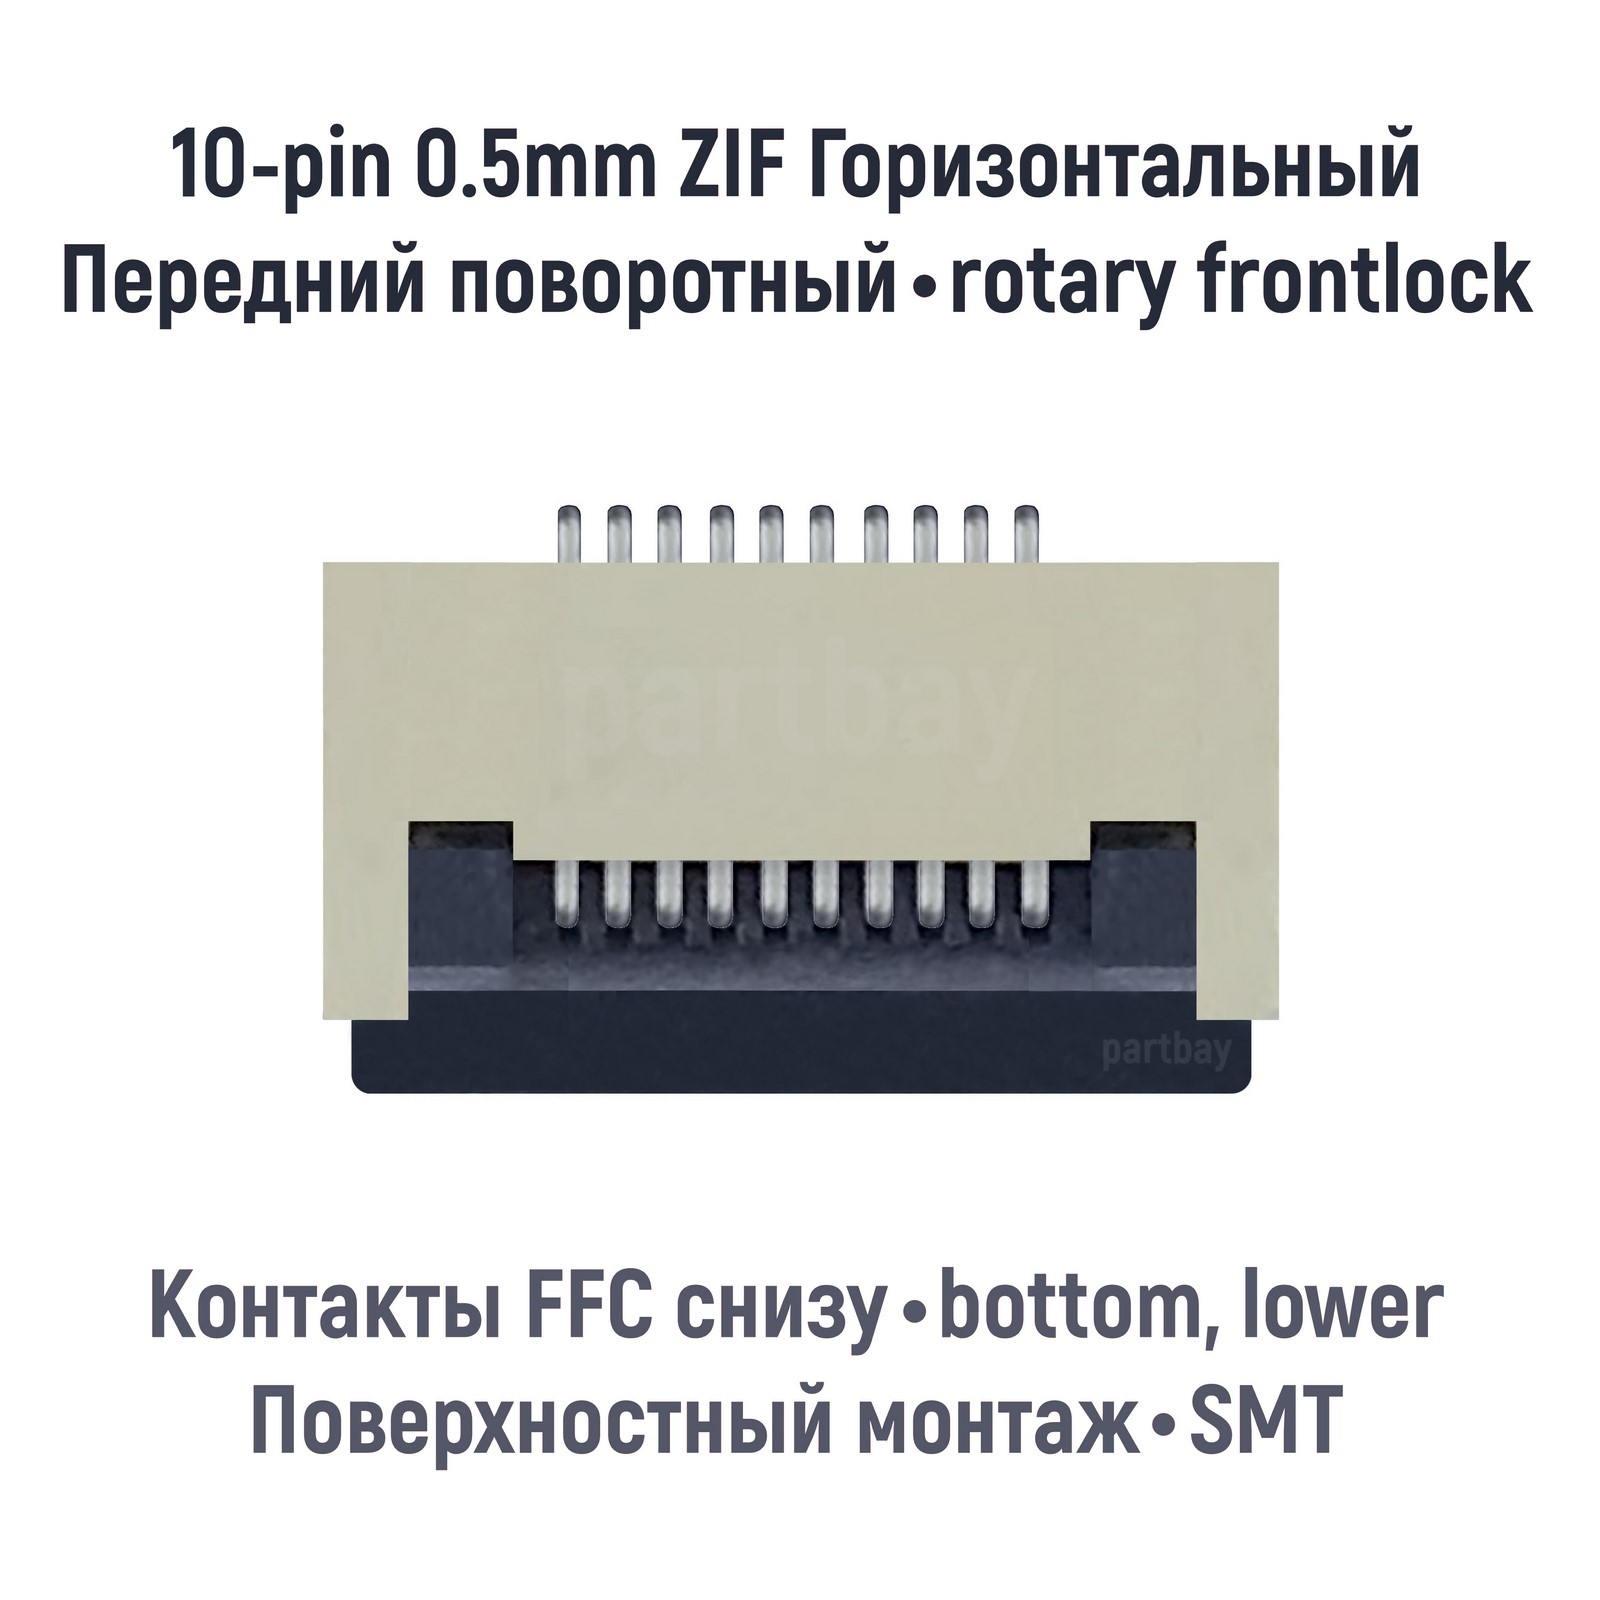 Коннектор OEM для FFC FPC шлейфа 10-pin шаг 0.5mm ZIF